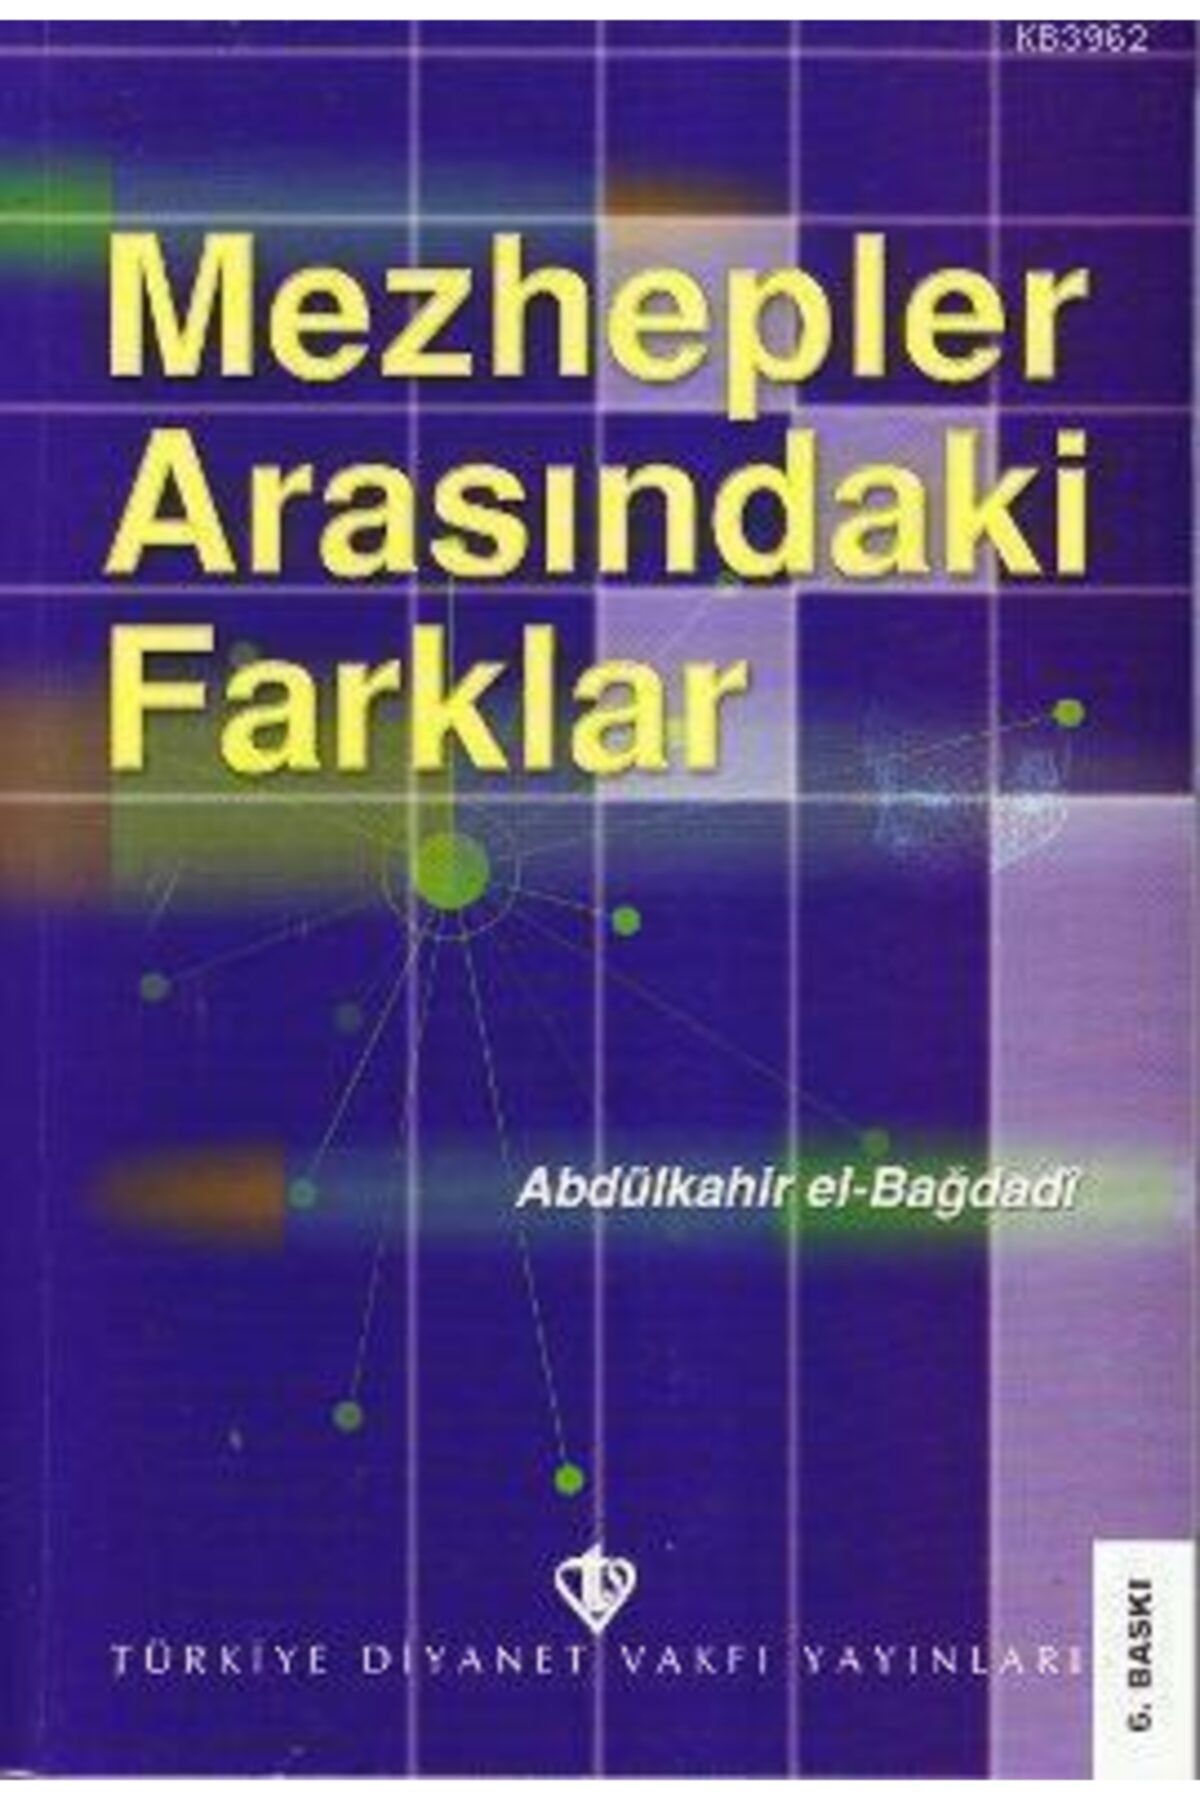 Türkiye Diyanet Vakfı Yayınları Mezhepler Arasındaki Farklar / Abdülkadir El-bağdadi /